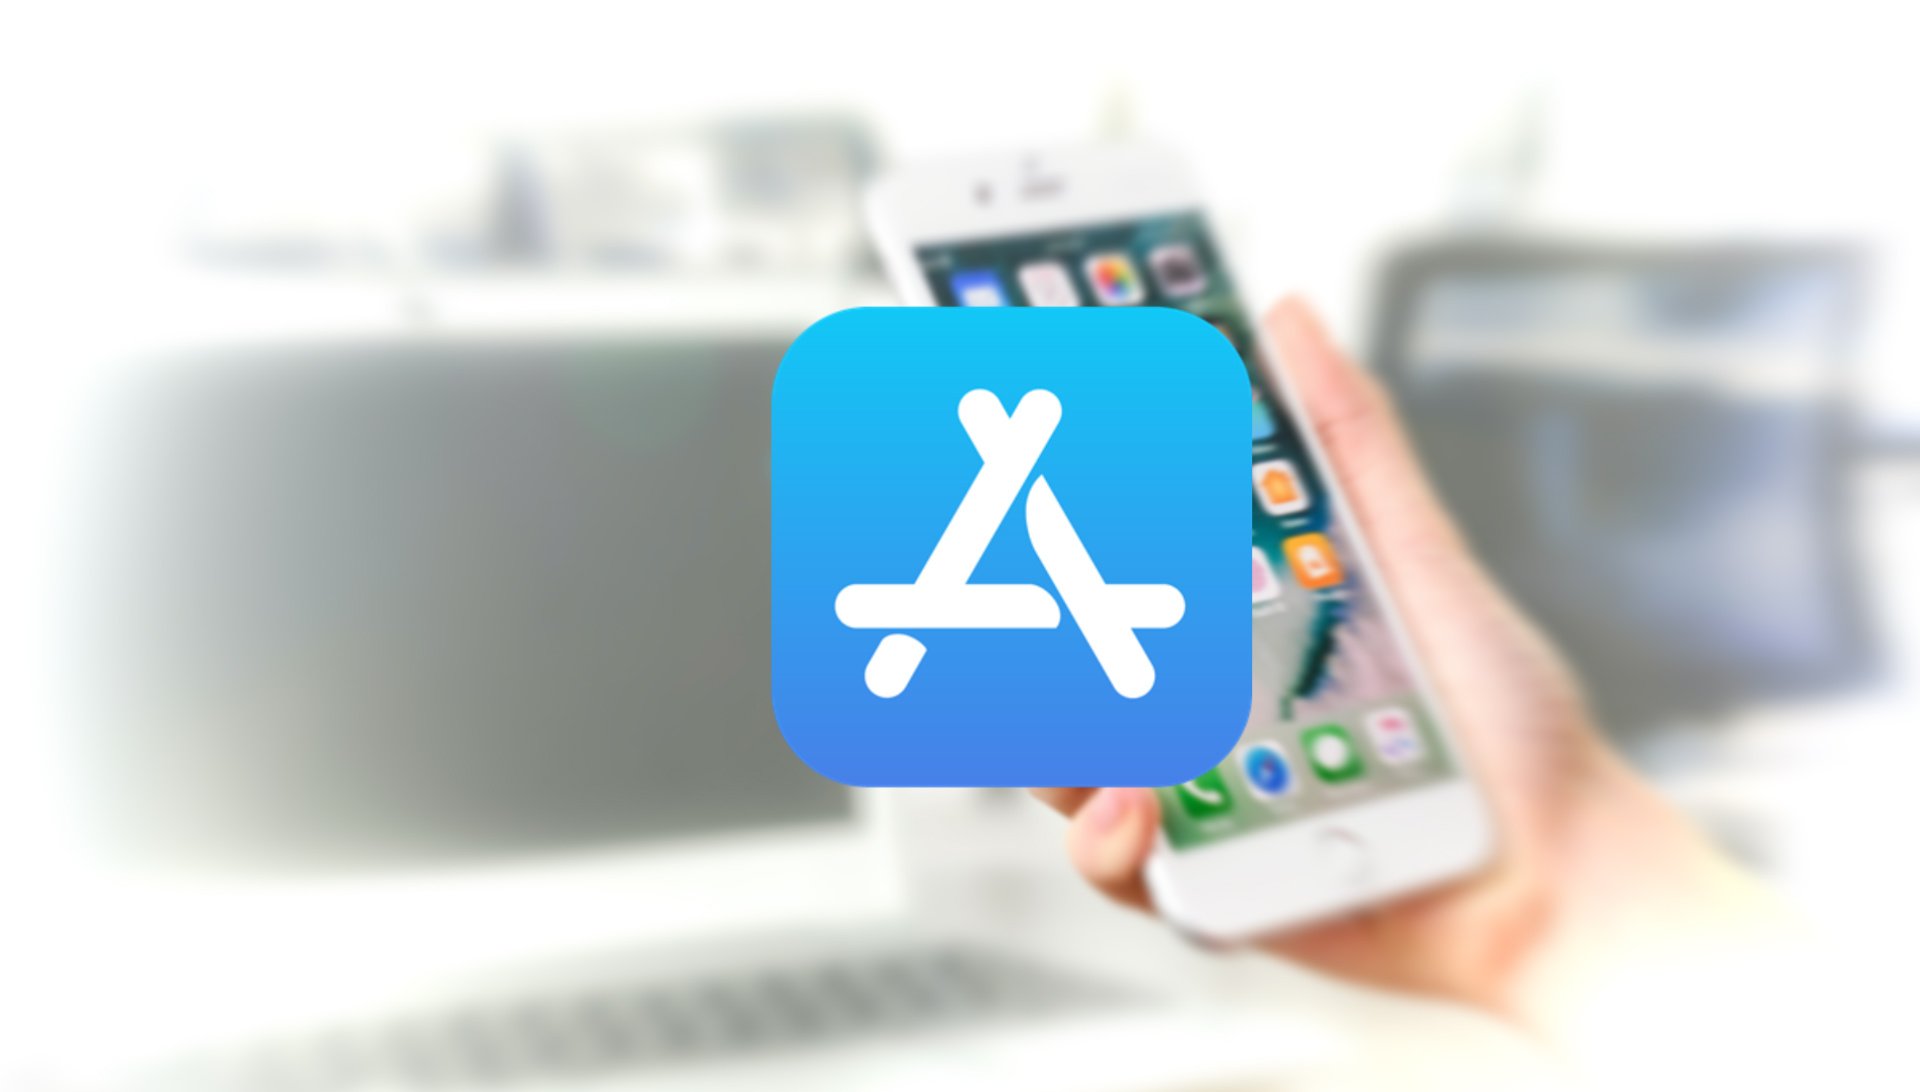 App Store Apple has added pexels